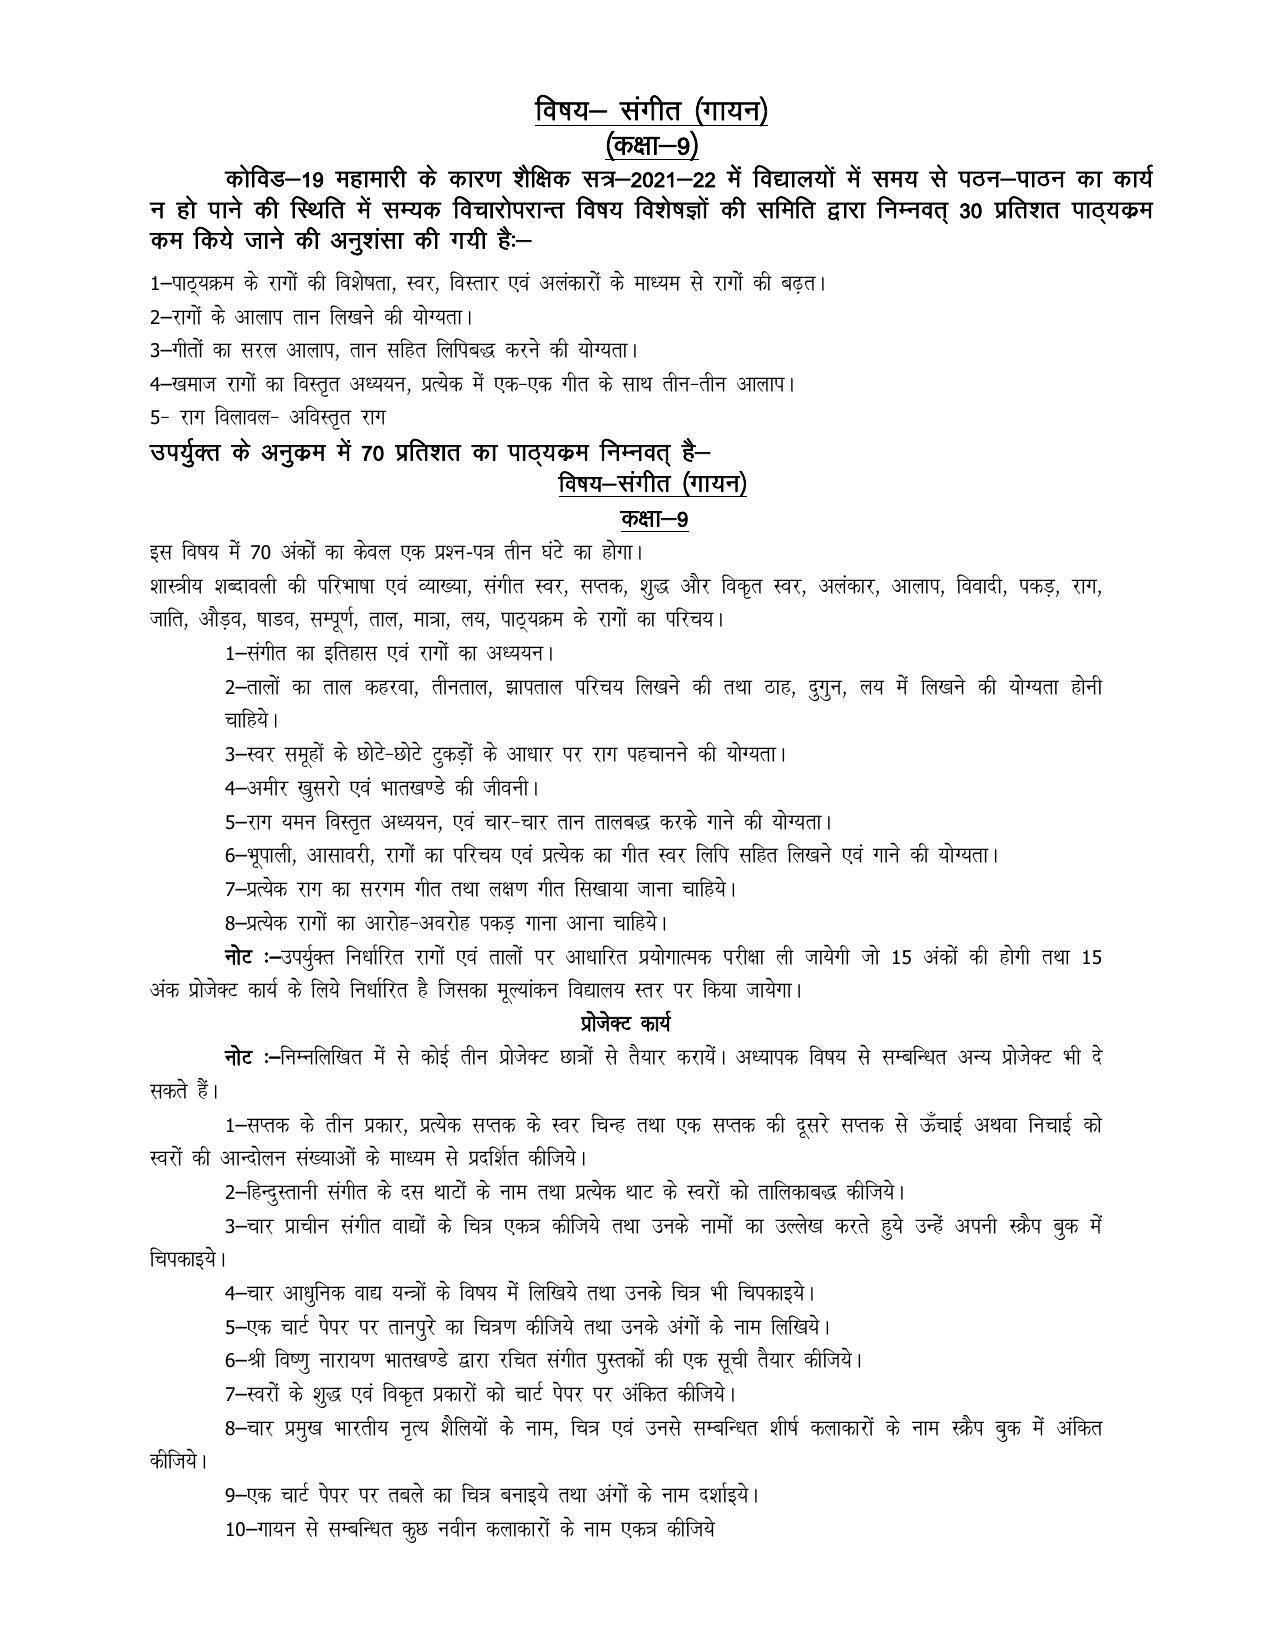 UP Board 9th Syllabus Sangeet (Gayan) - Page 1